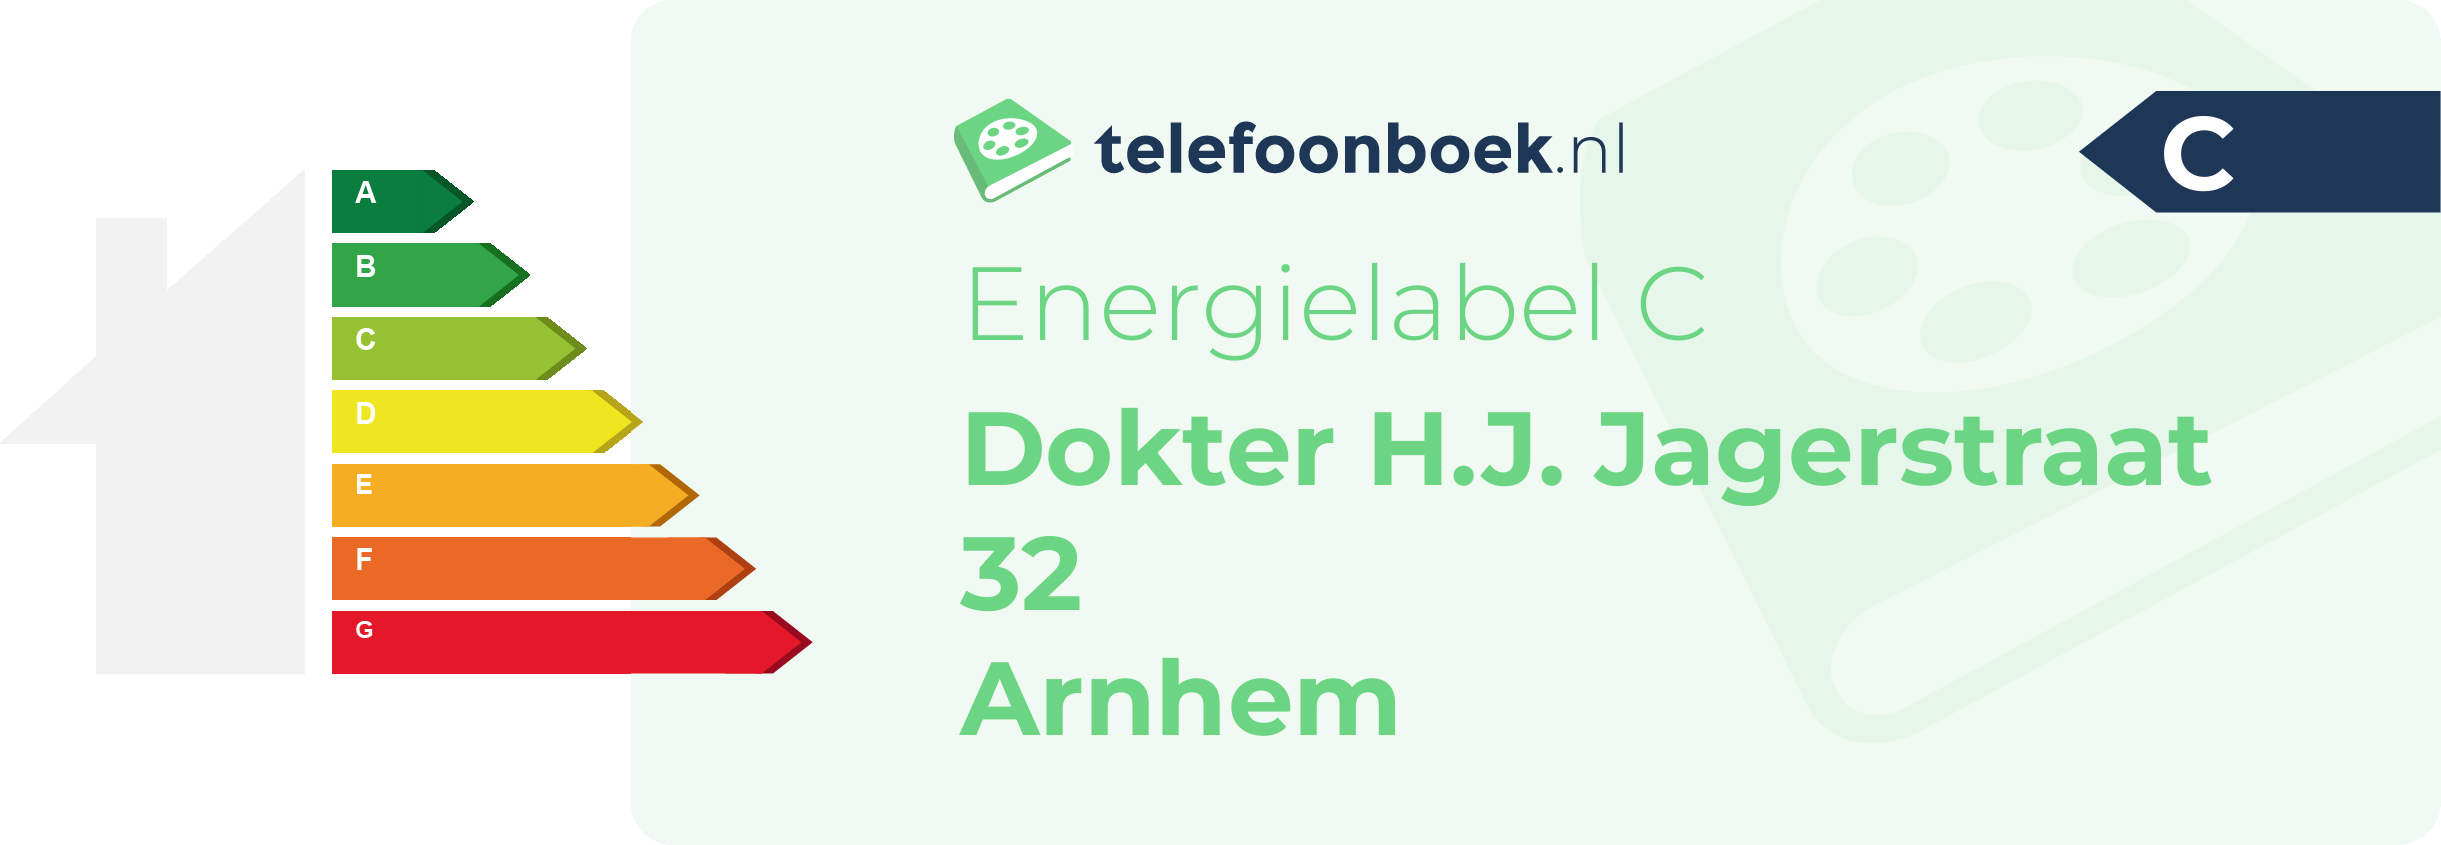 Energielabel Dokter H.J. Jagerstraat 32 Arnhem